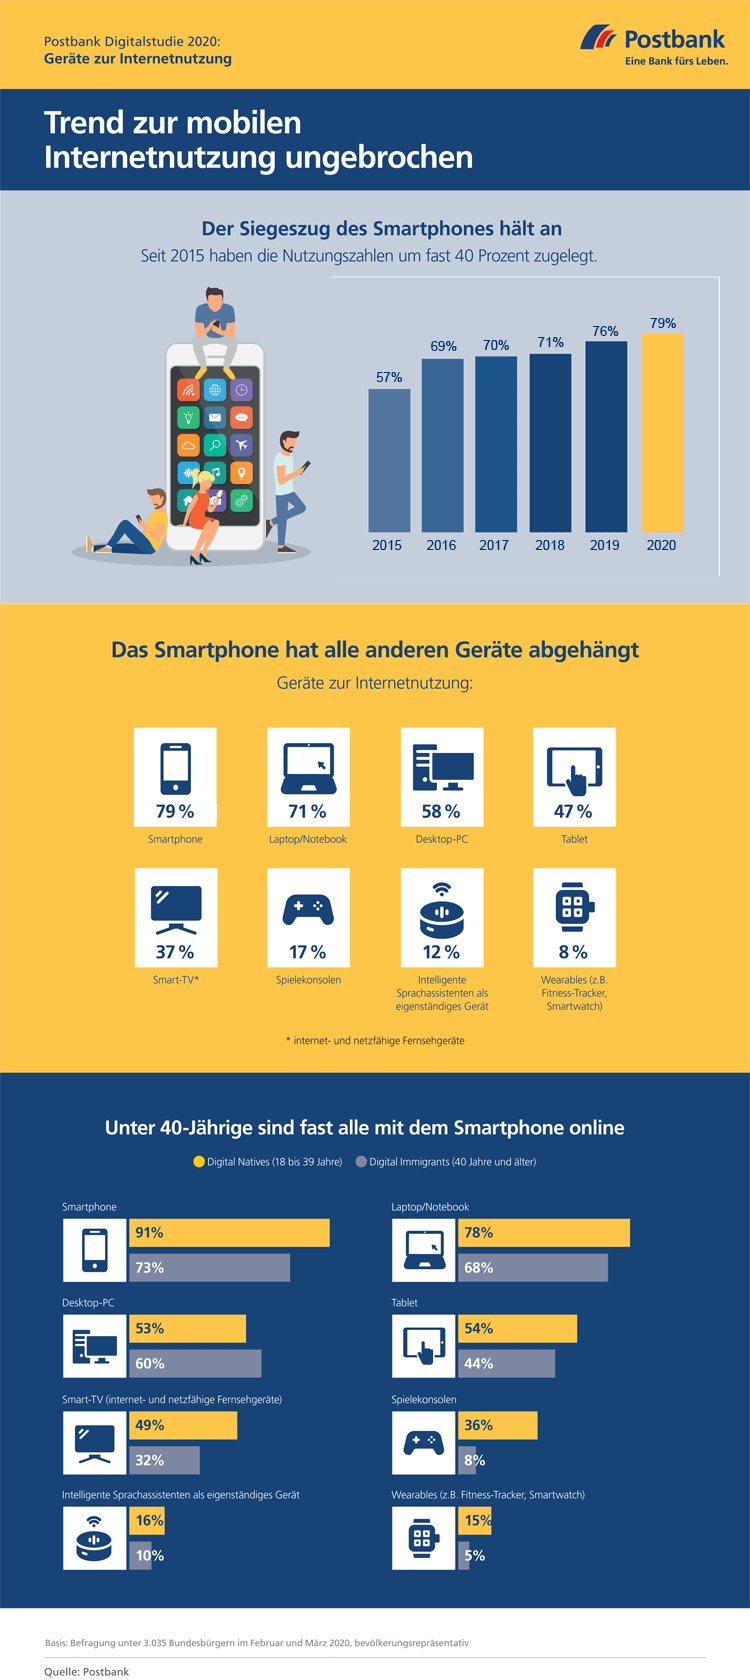 Infografik: Internetnutzung der Deutschen nach Devices